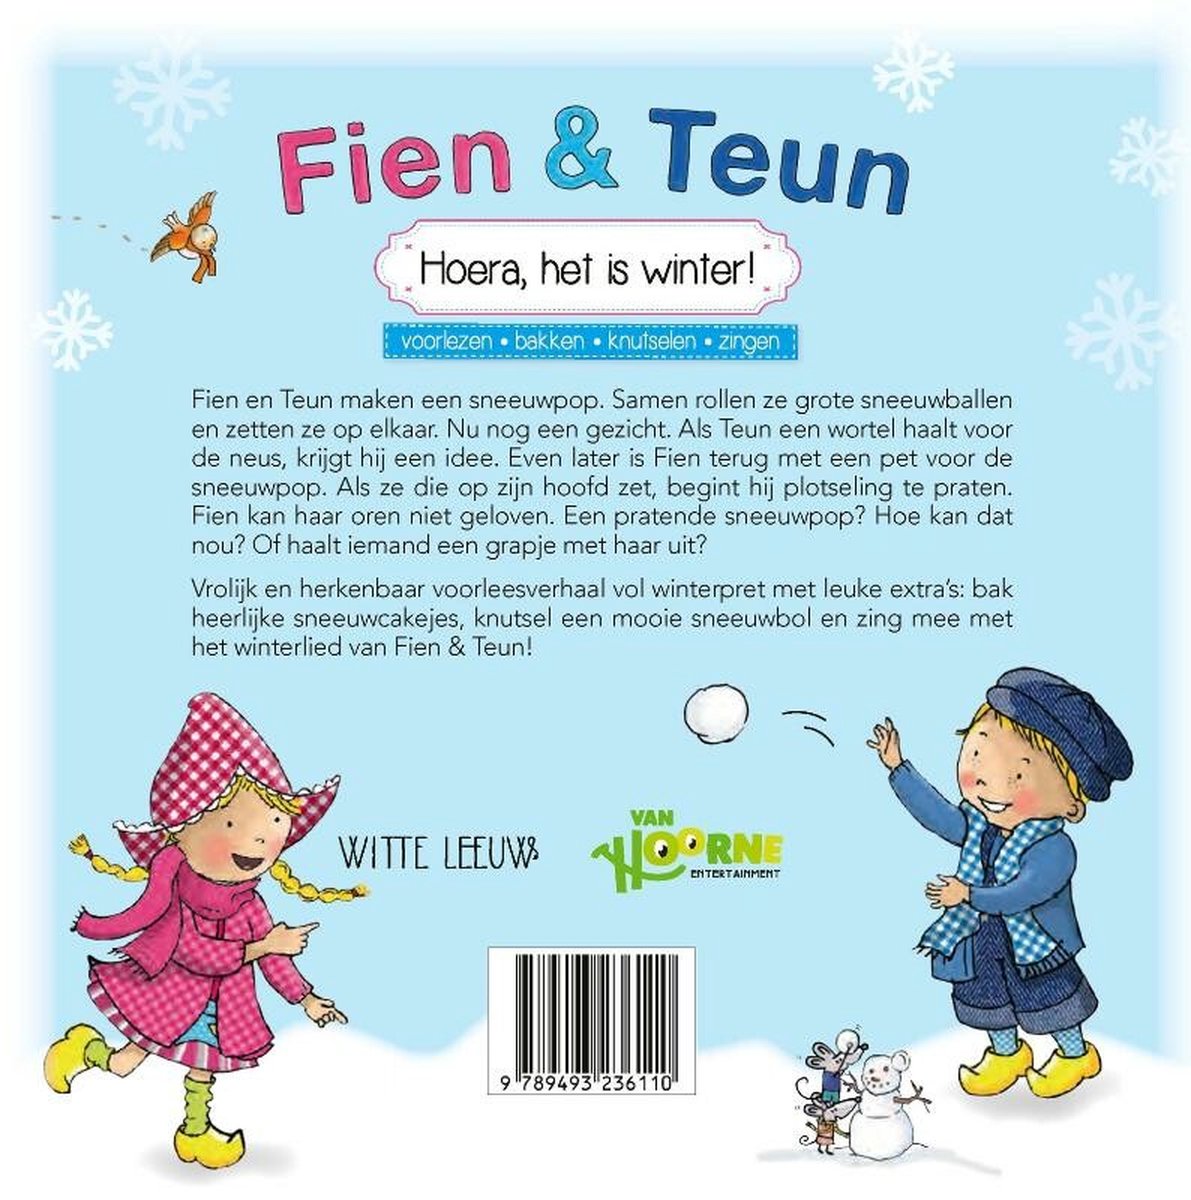 Fien & Teun - Hoera, het is winter! - voorlezen, bakken, knutselen, zingen